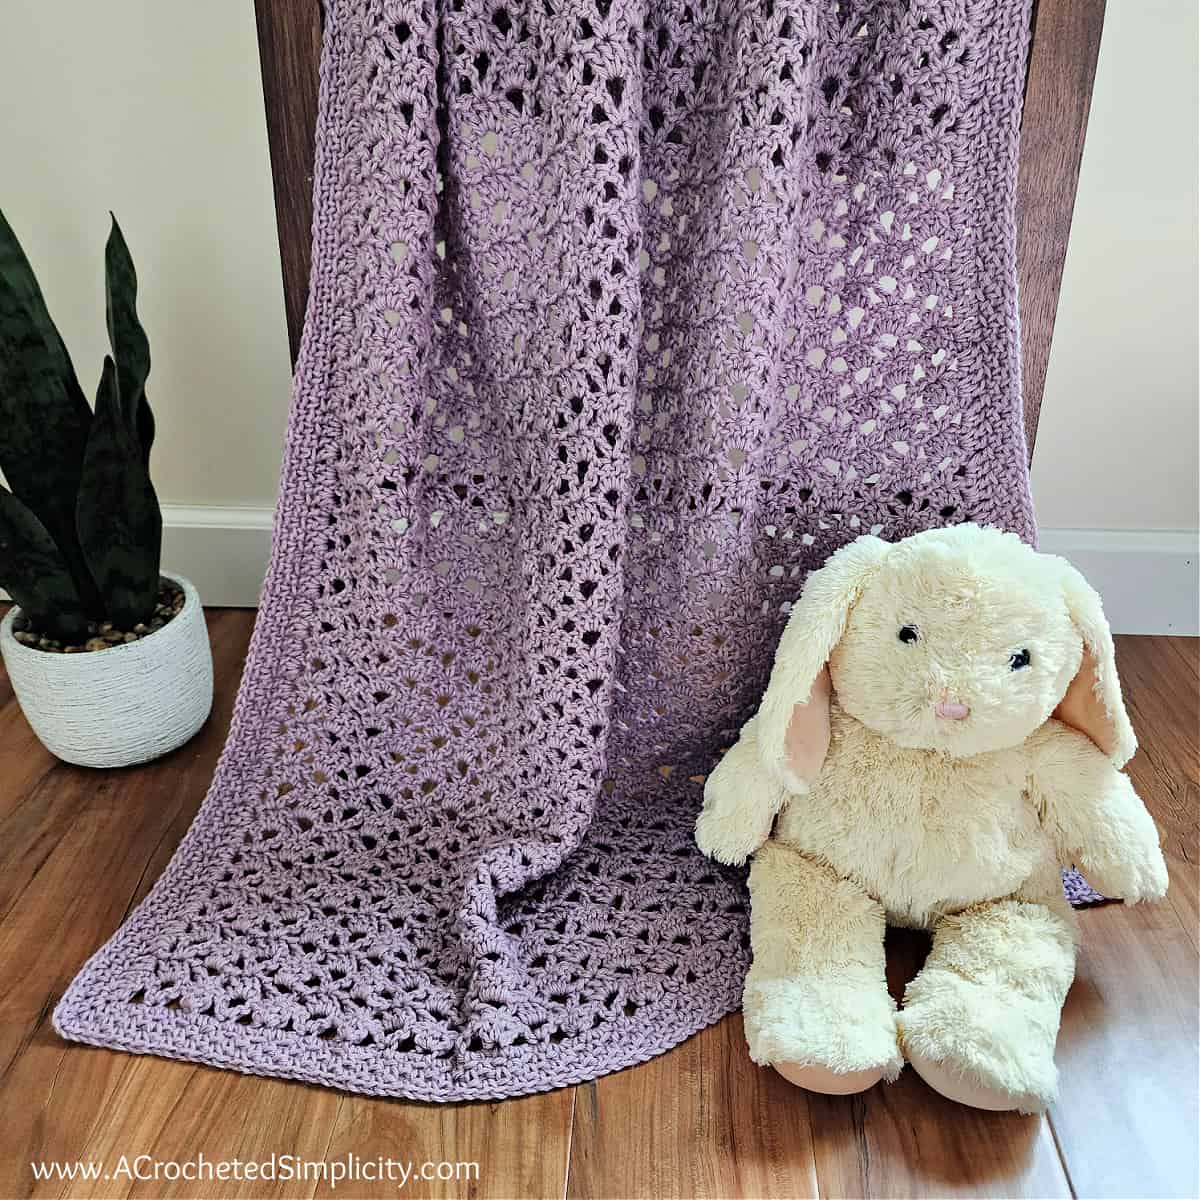 crochet baby blanket for beginners